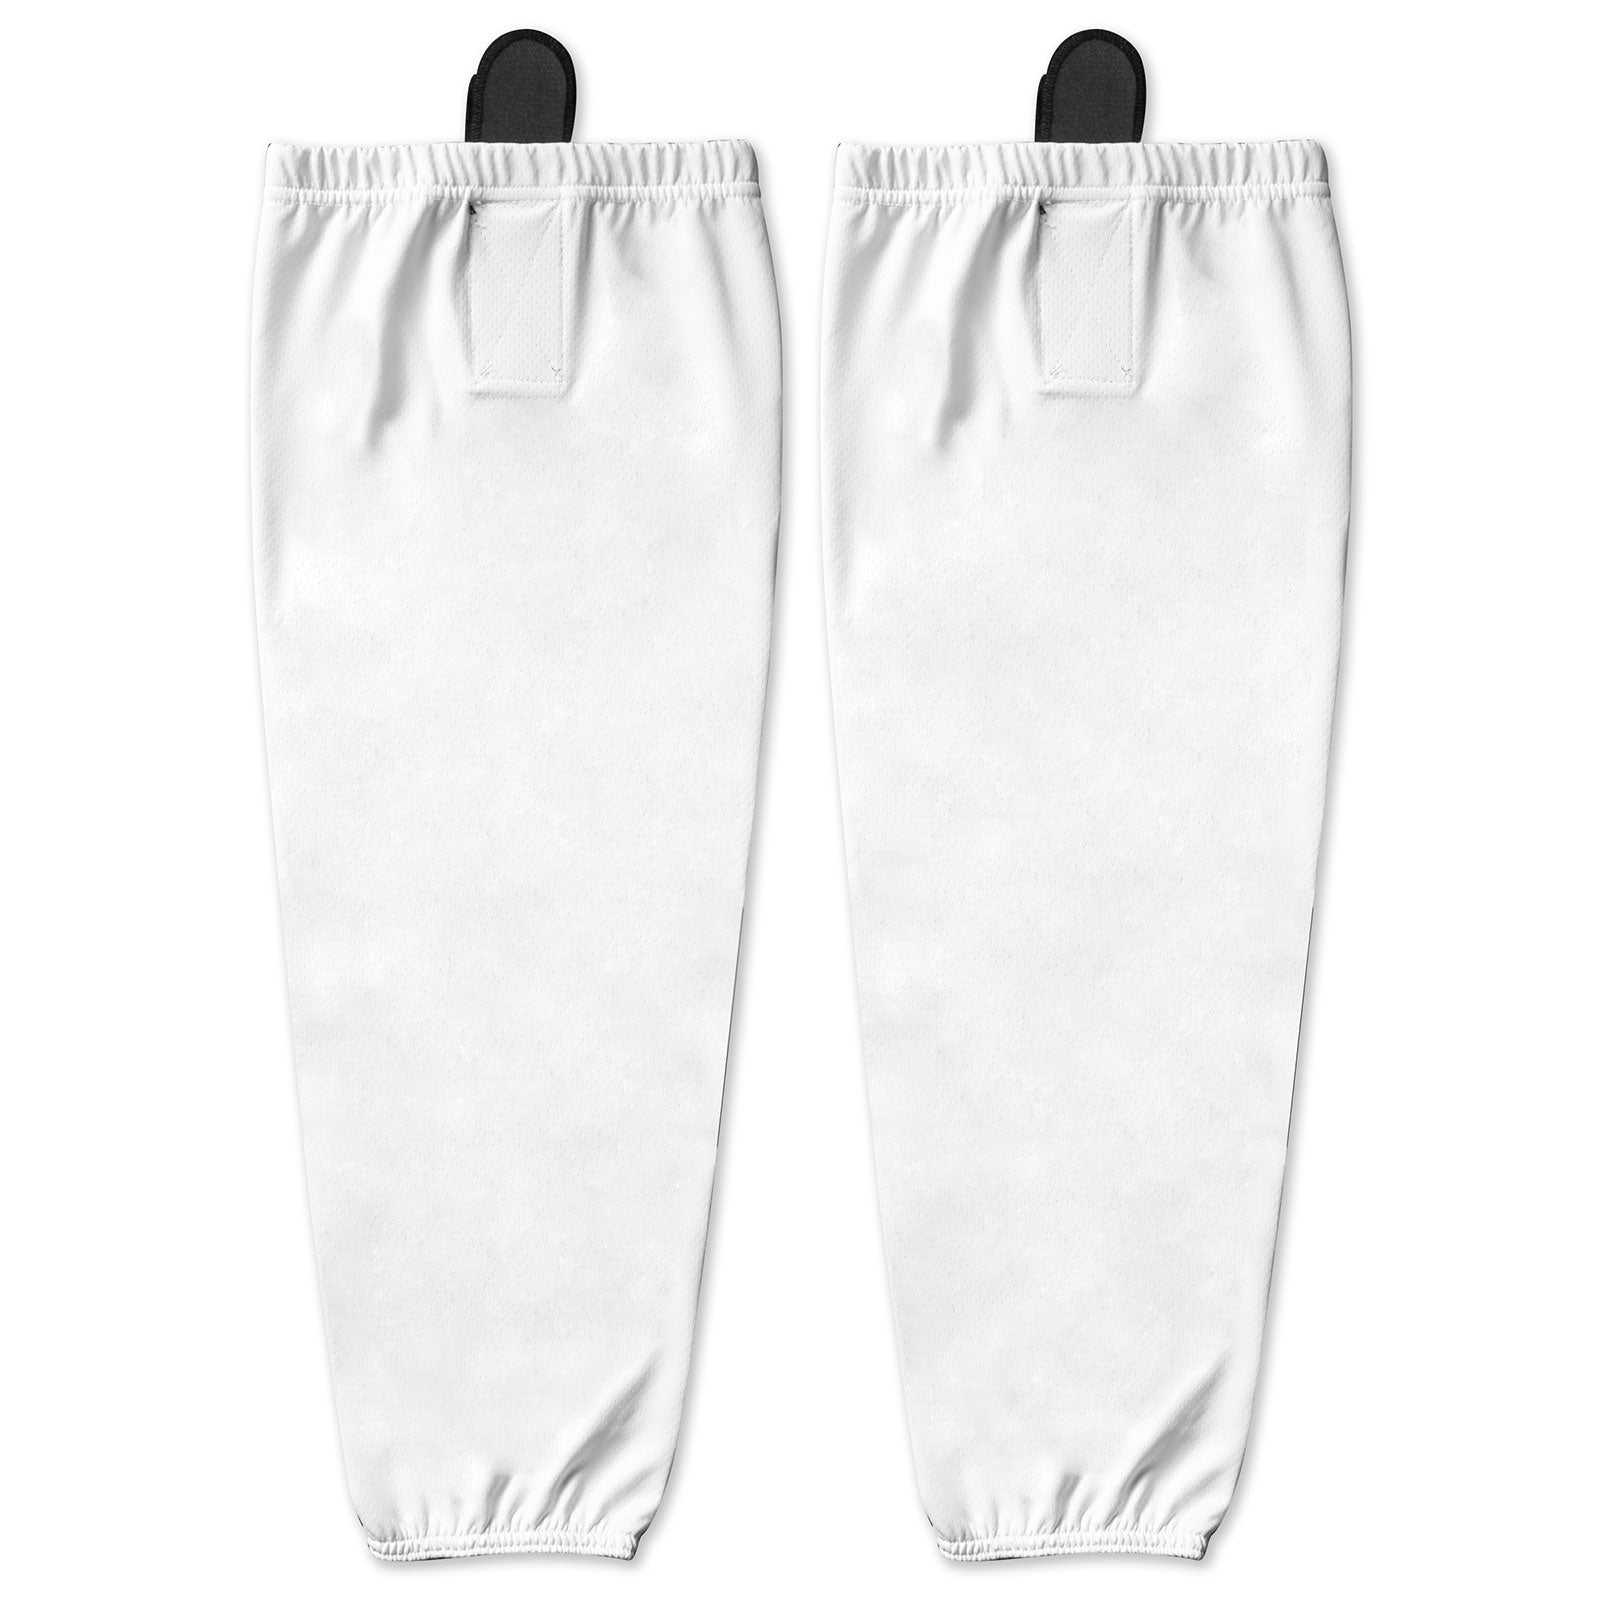 Champro HS1 Shift Hockey Socks - White